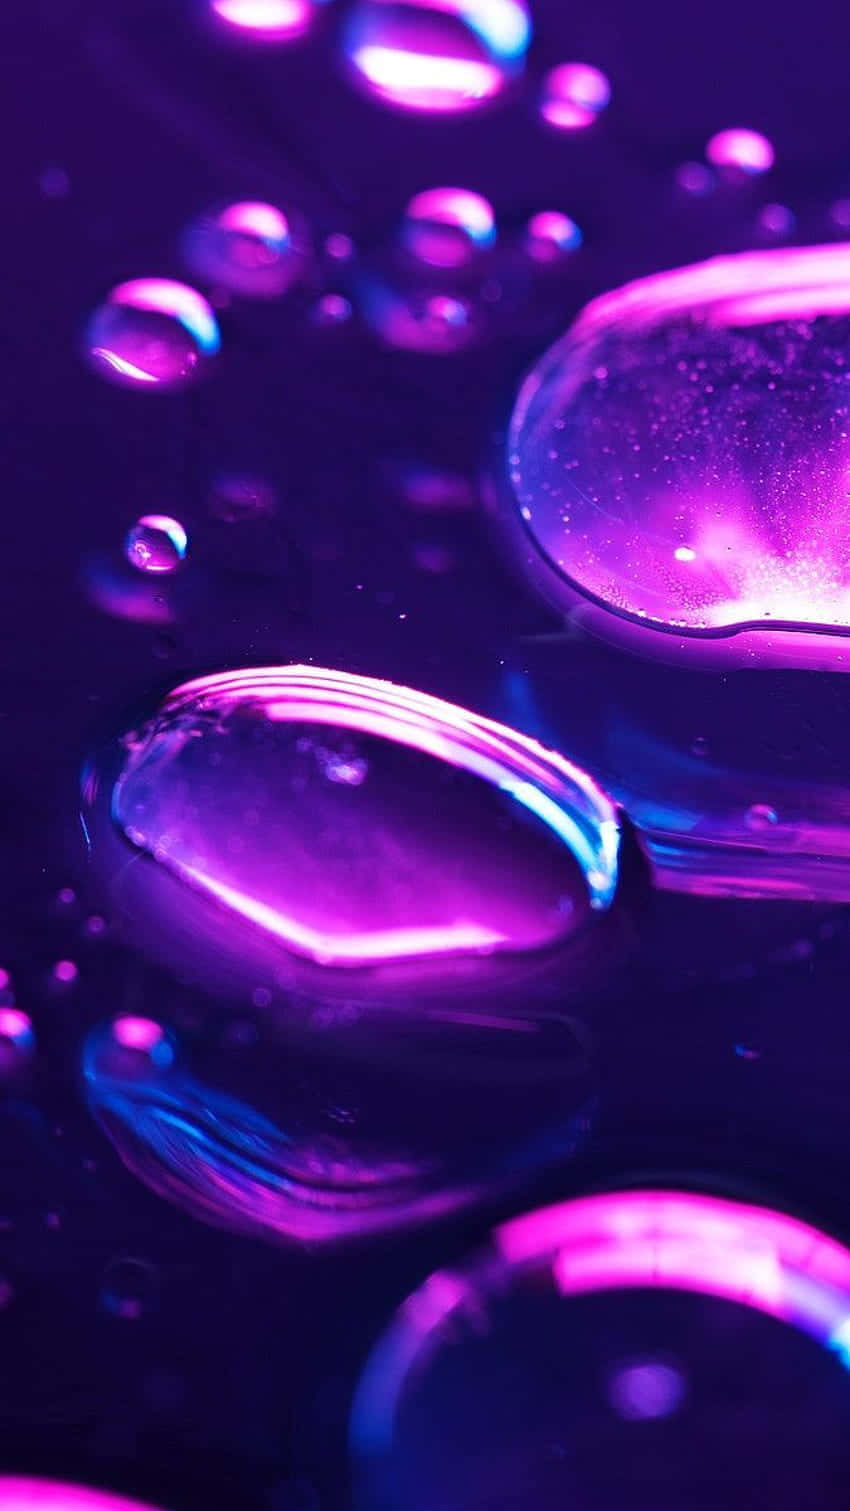 Neon Purple Water Droplets Aesthetic.jpg Wallpaper